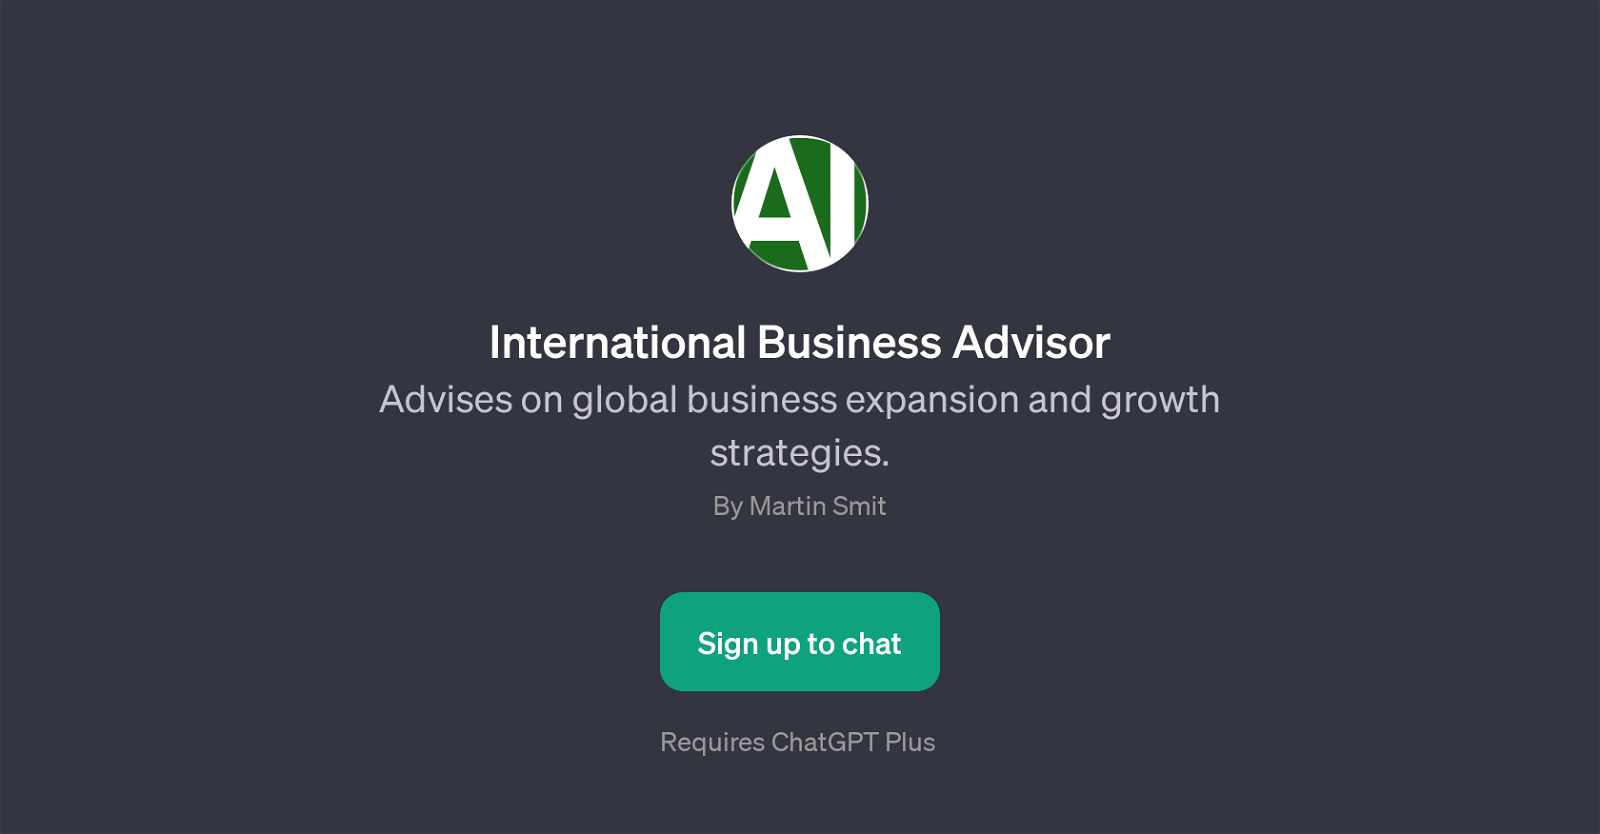 International Business Advisor website